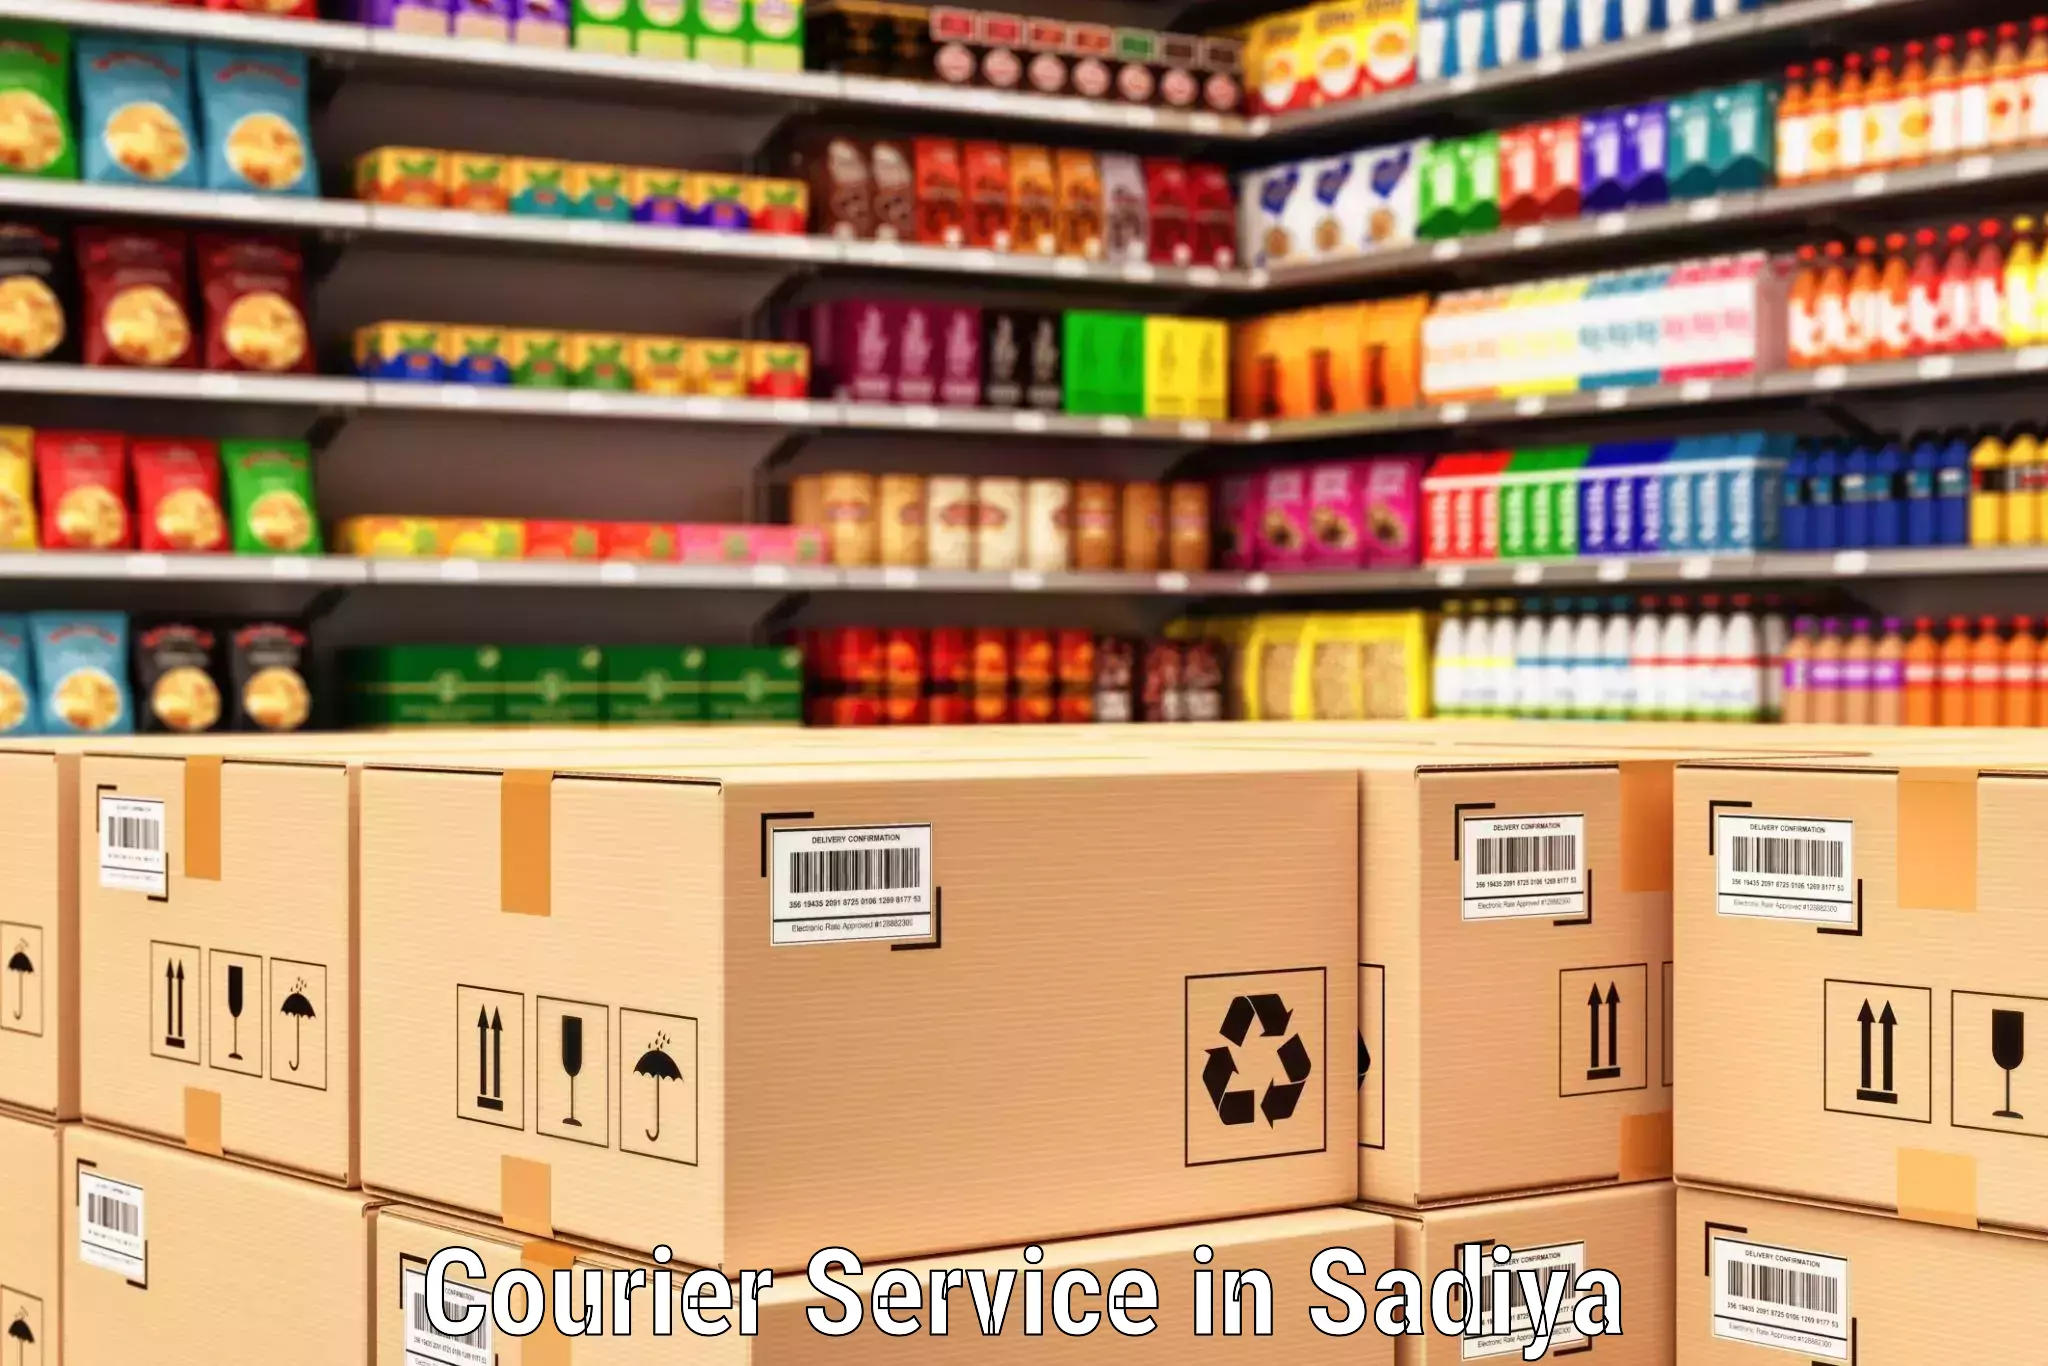 Smart shipping technology in Sadiya